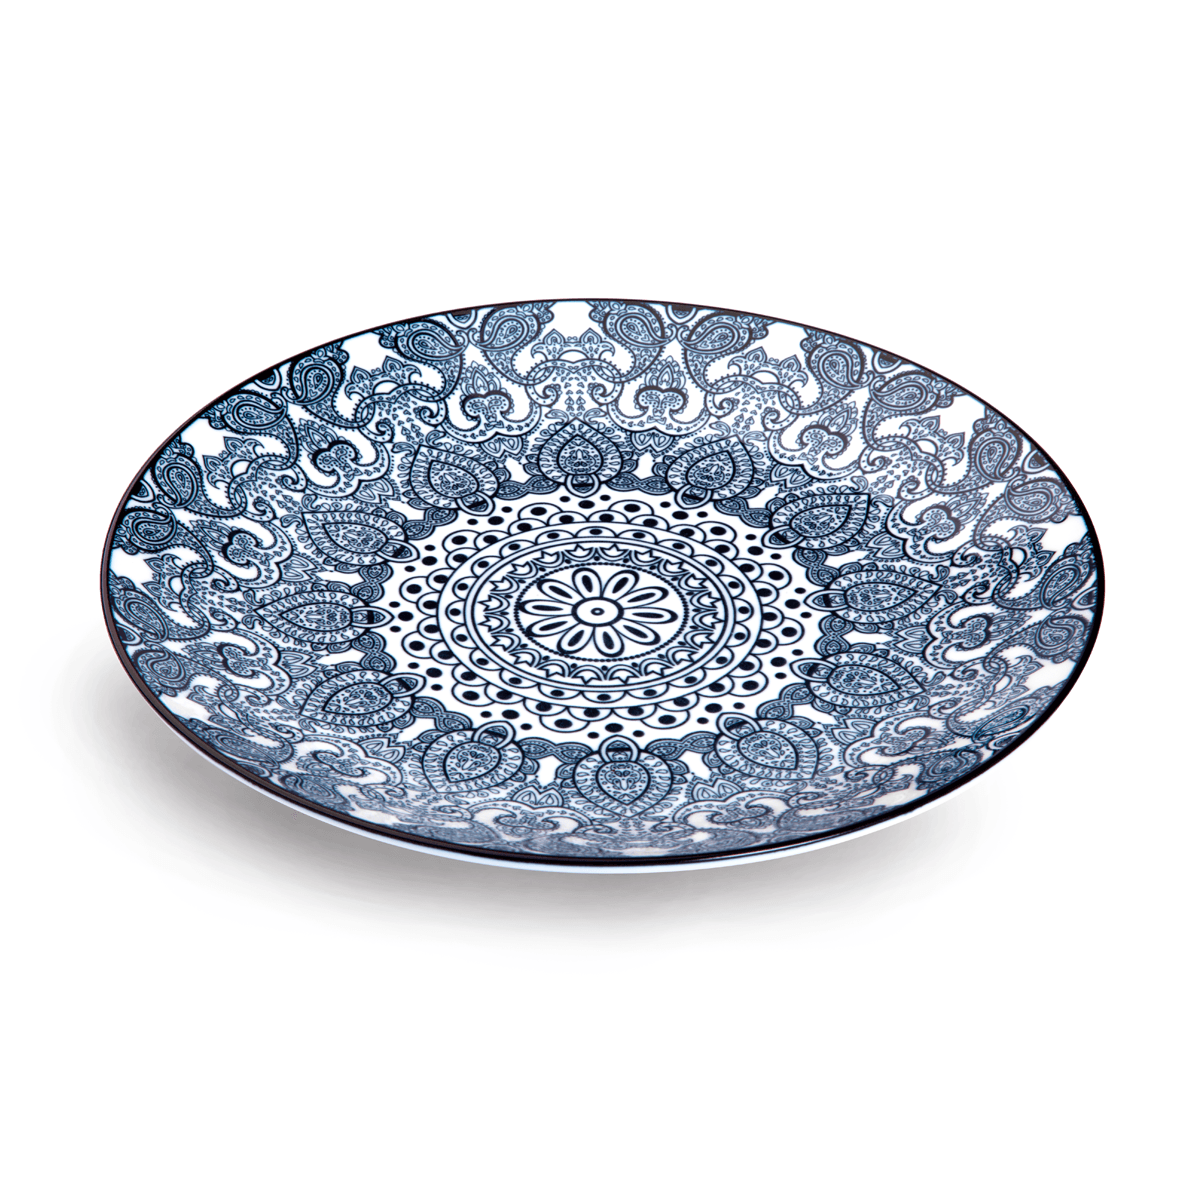 Che Brucia Arabesque Blue Porcelain Round Plate 25.4 cm / 11" Blue Ivory Porcelain